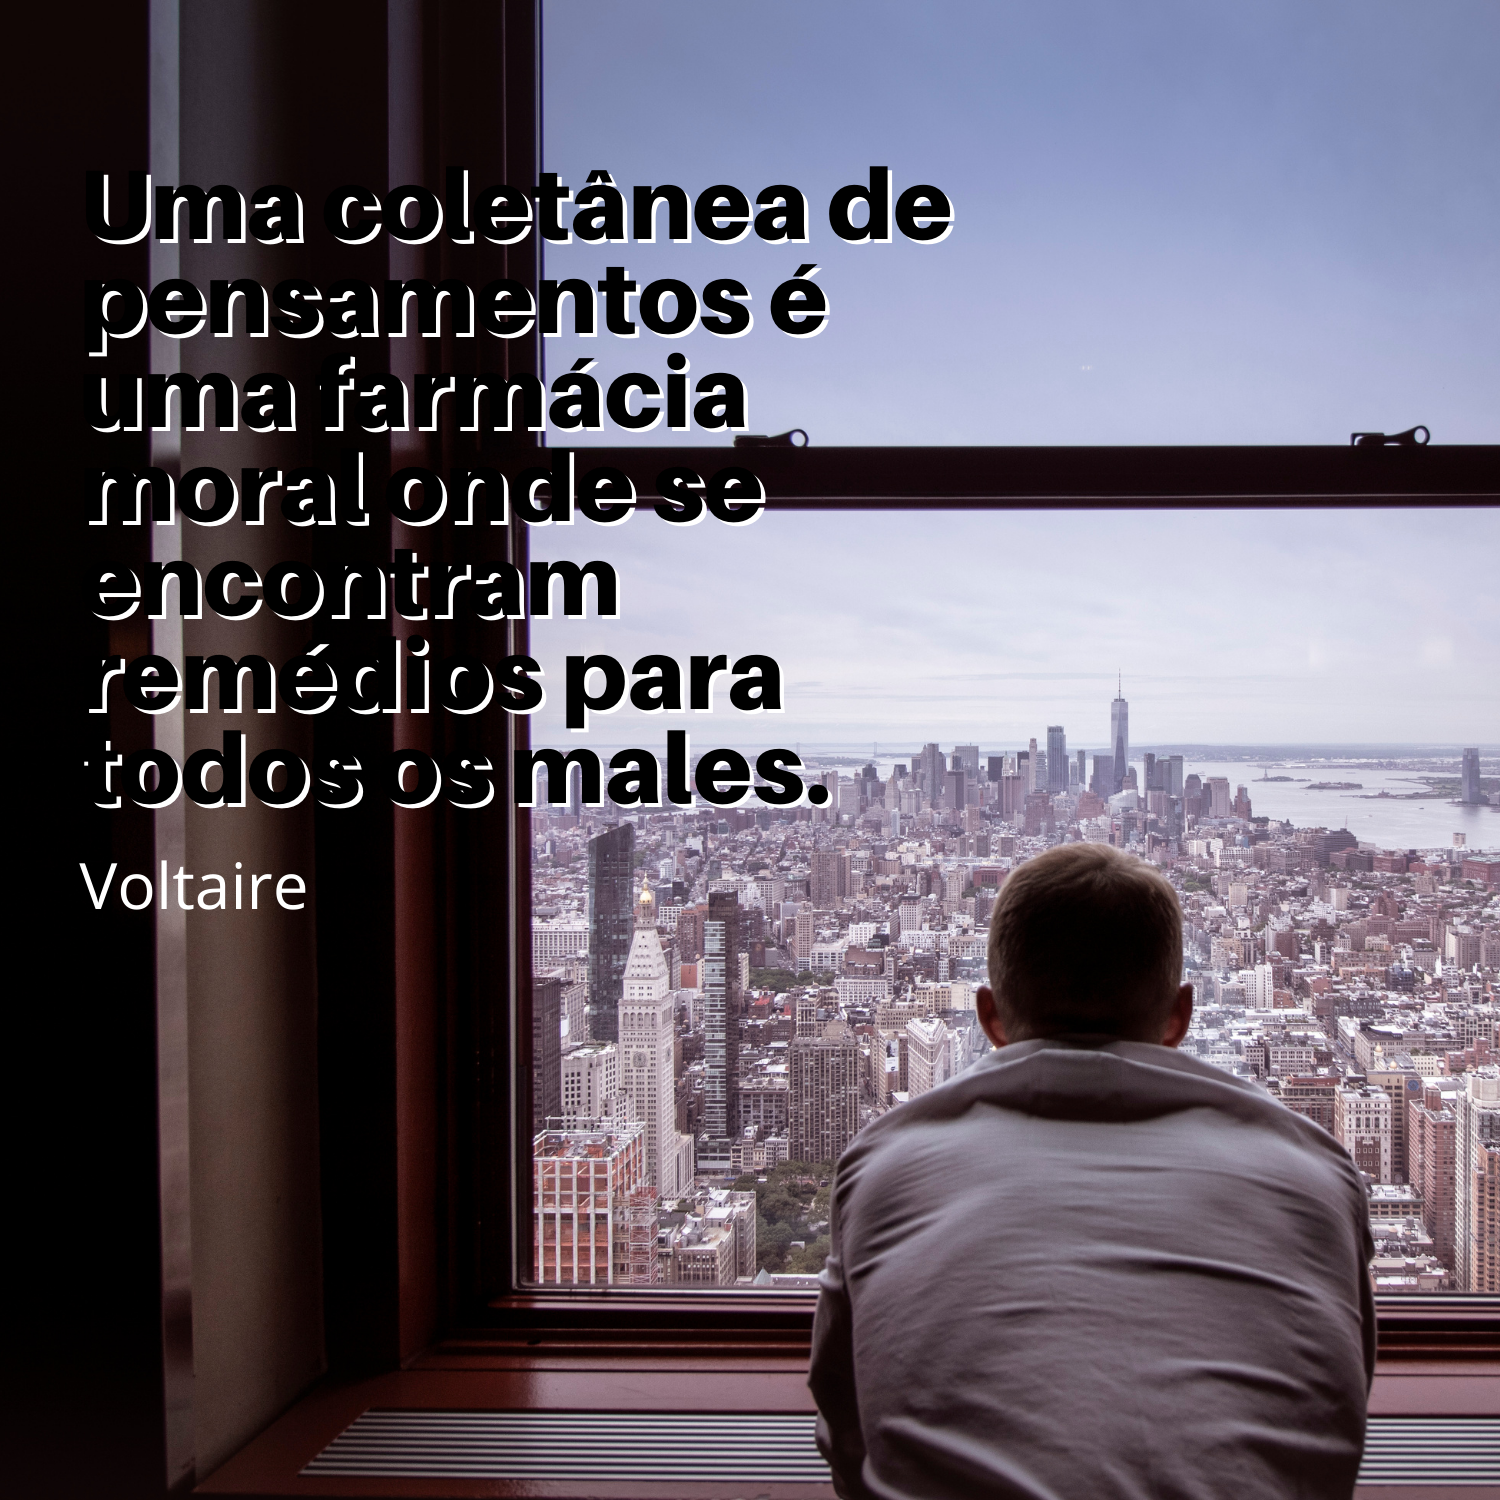 Voltaire - Frases para Mensagens e Status